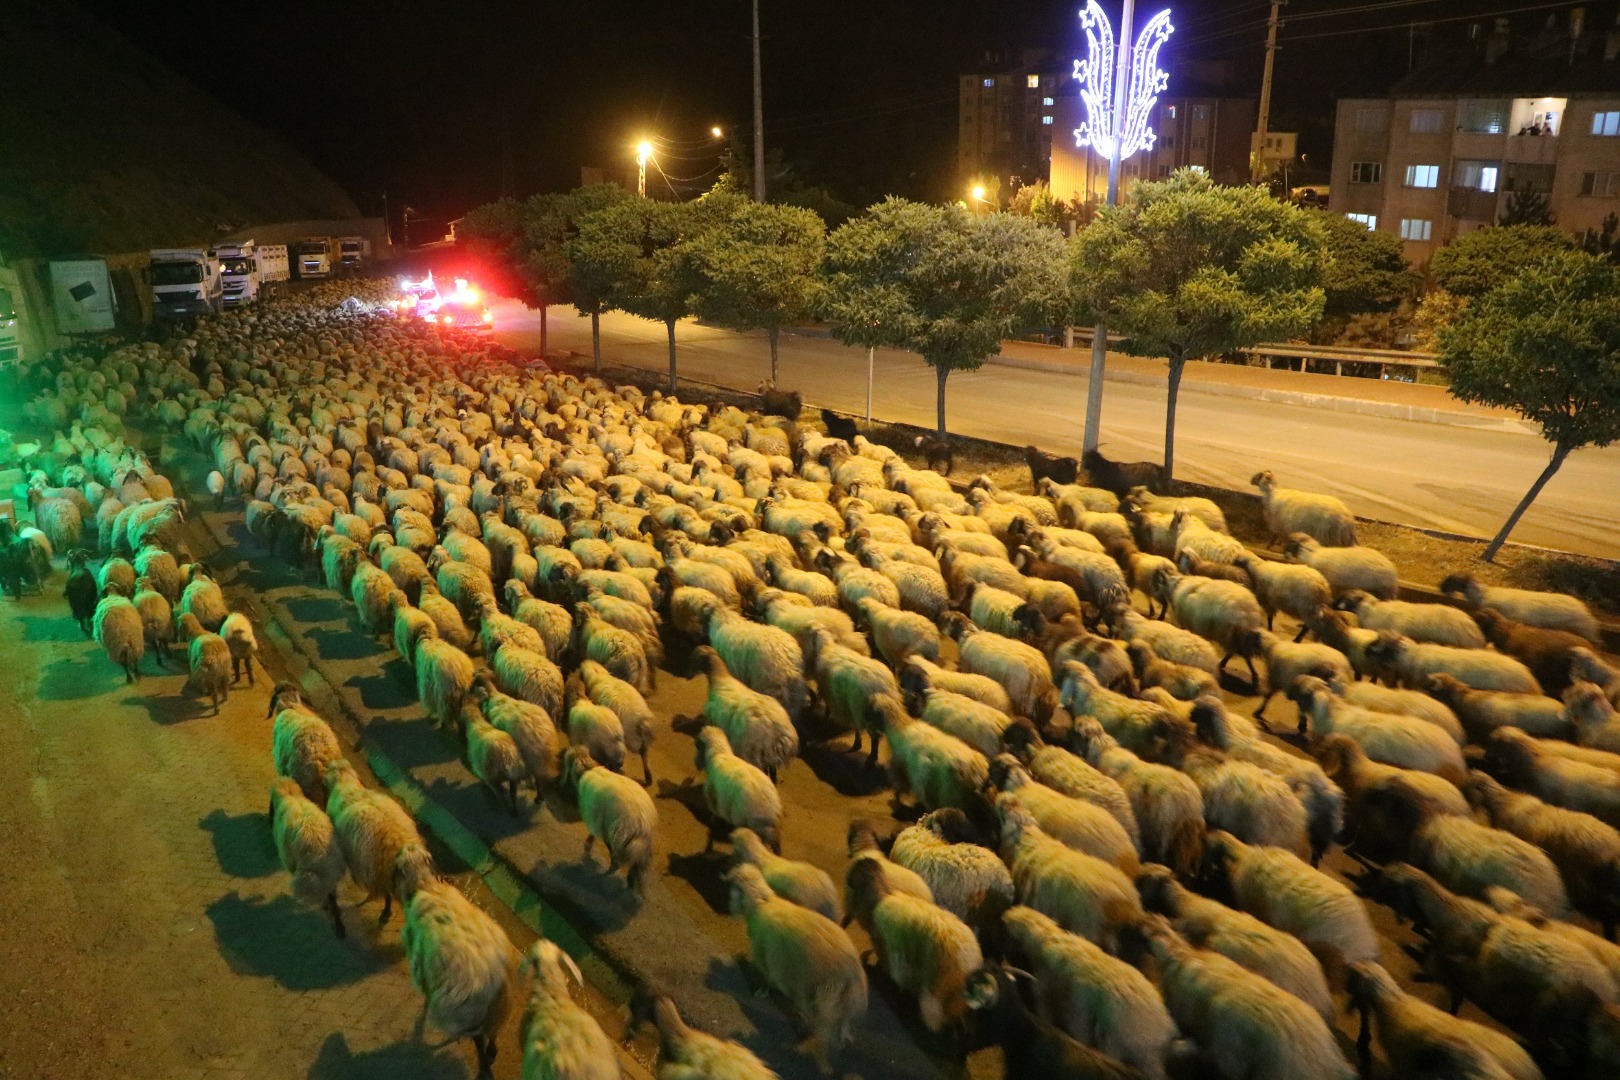 Hakkari-Van yolunda polis eskortluğunda 10 bin koyun geçişi